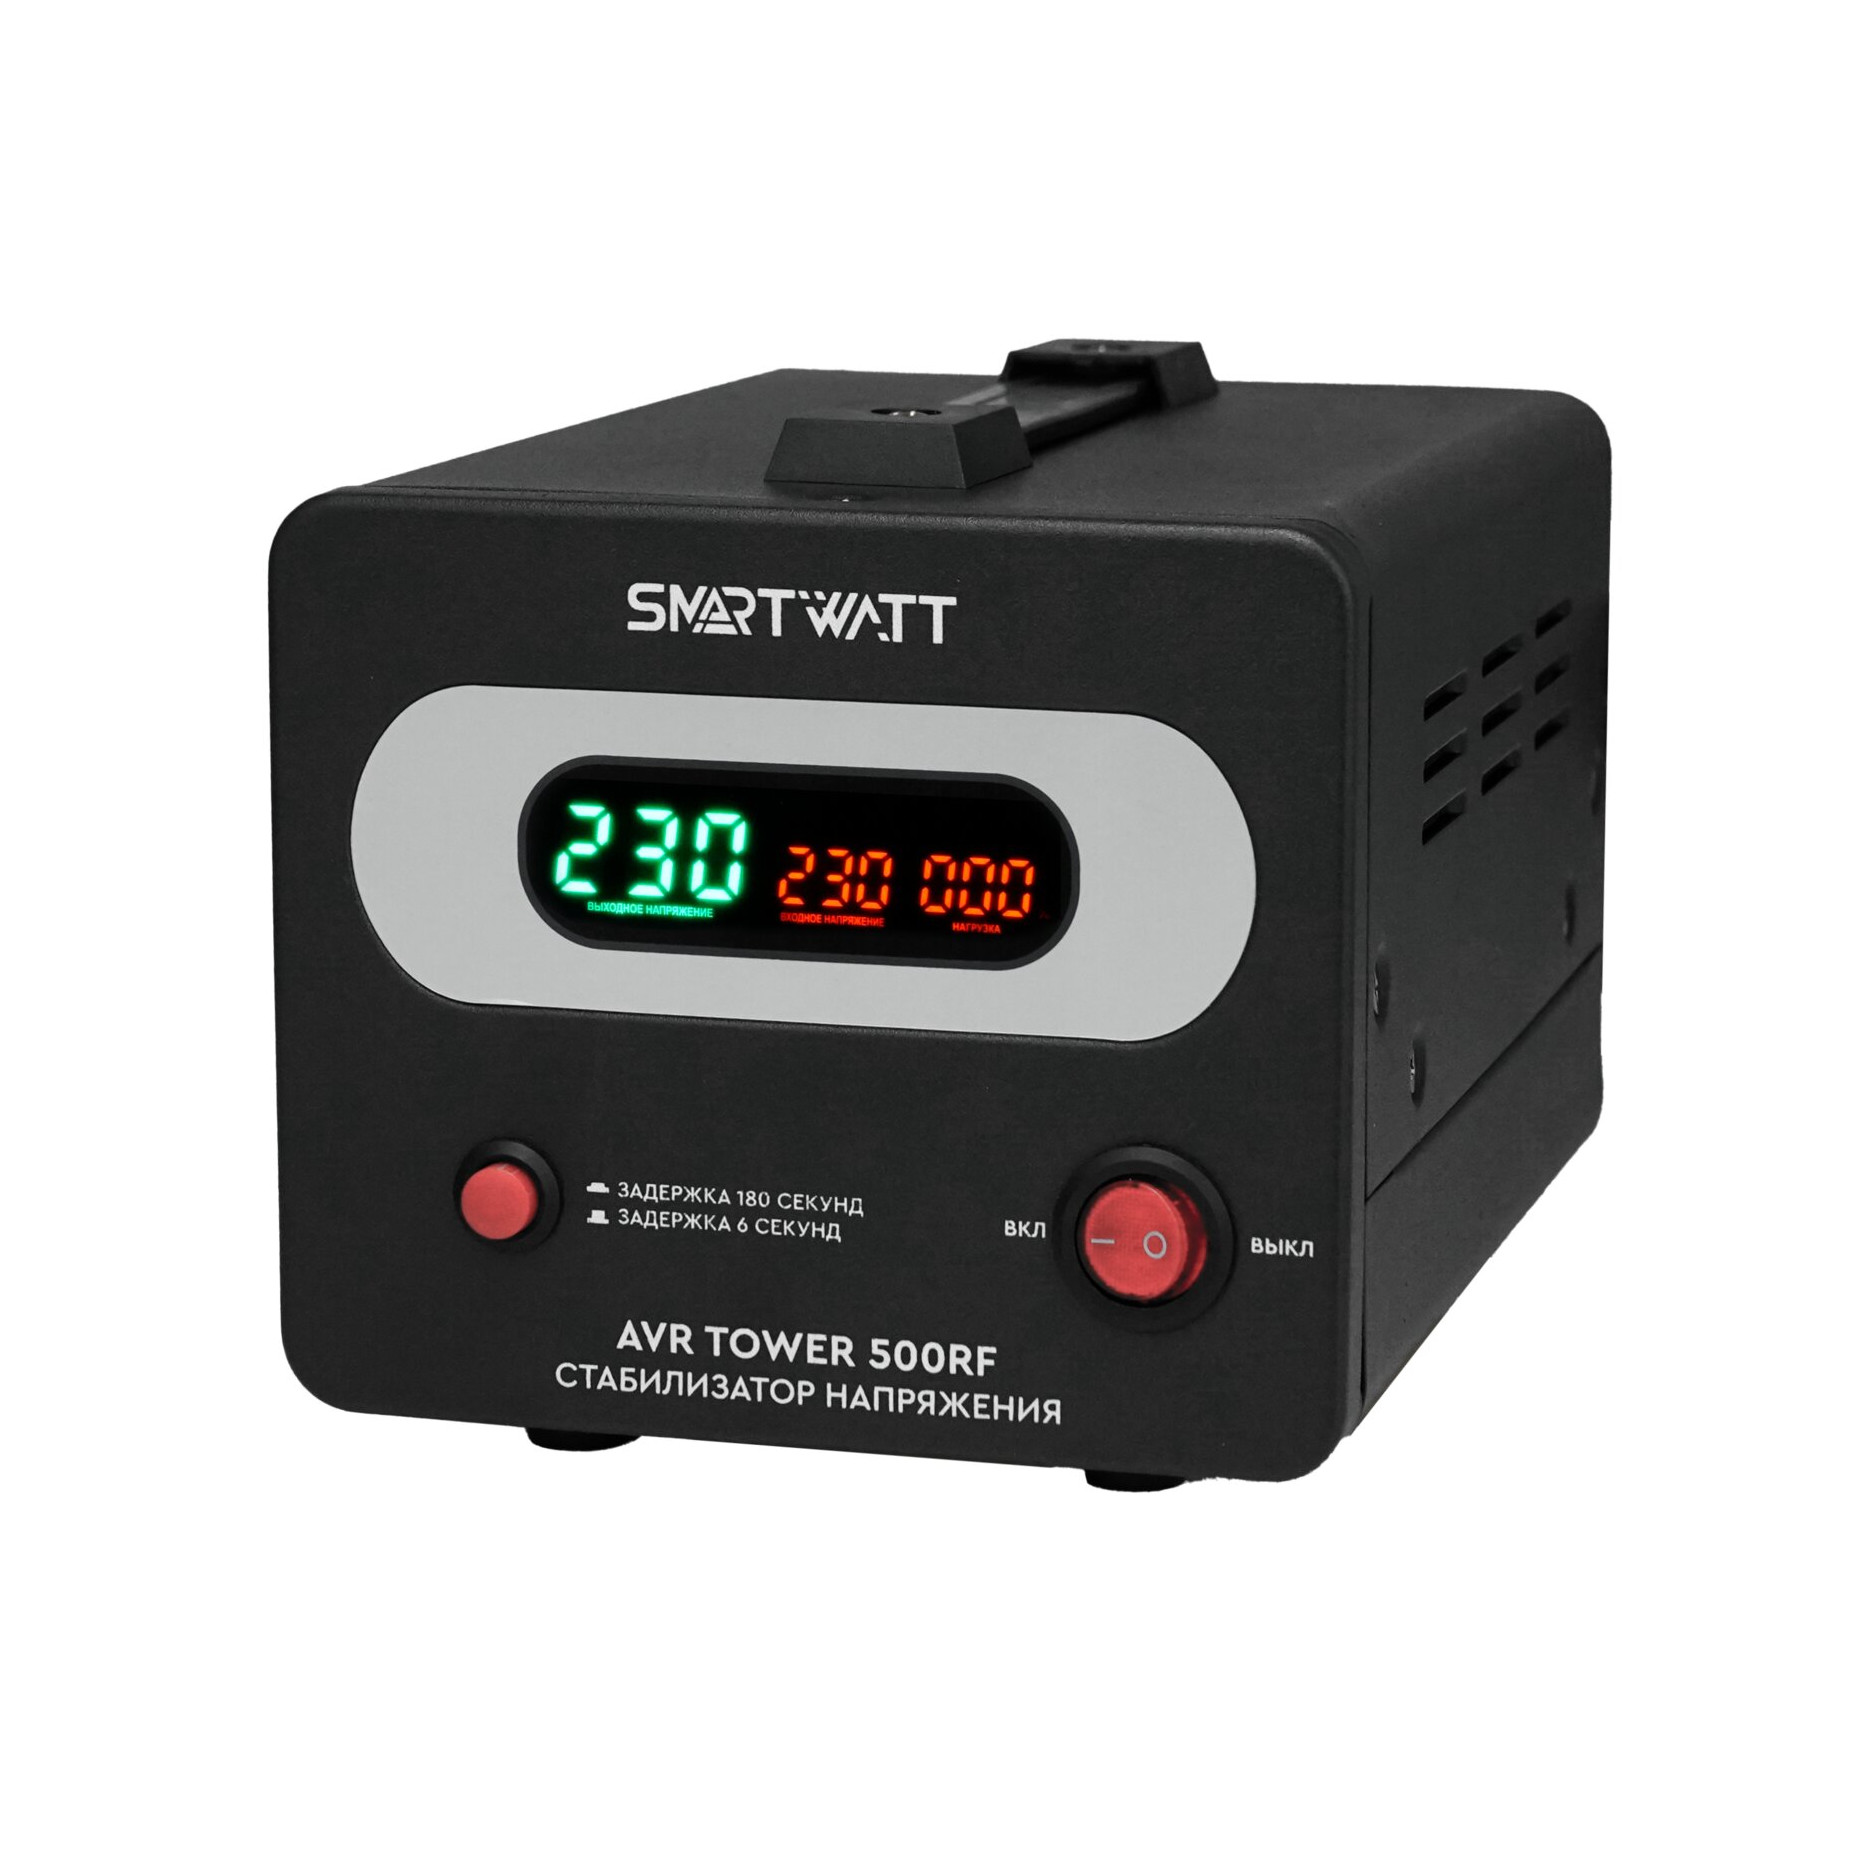 Стабилизатор напряжения SMARTWATT AVR TOWER 500RF, 500 VA, клеммная колодка, черный (4512020370006)